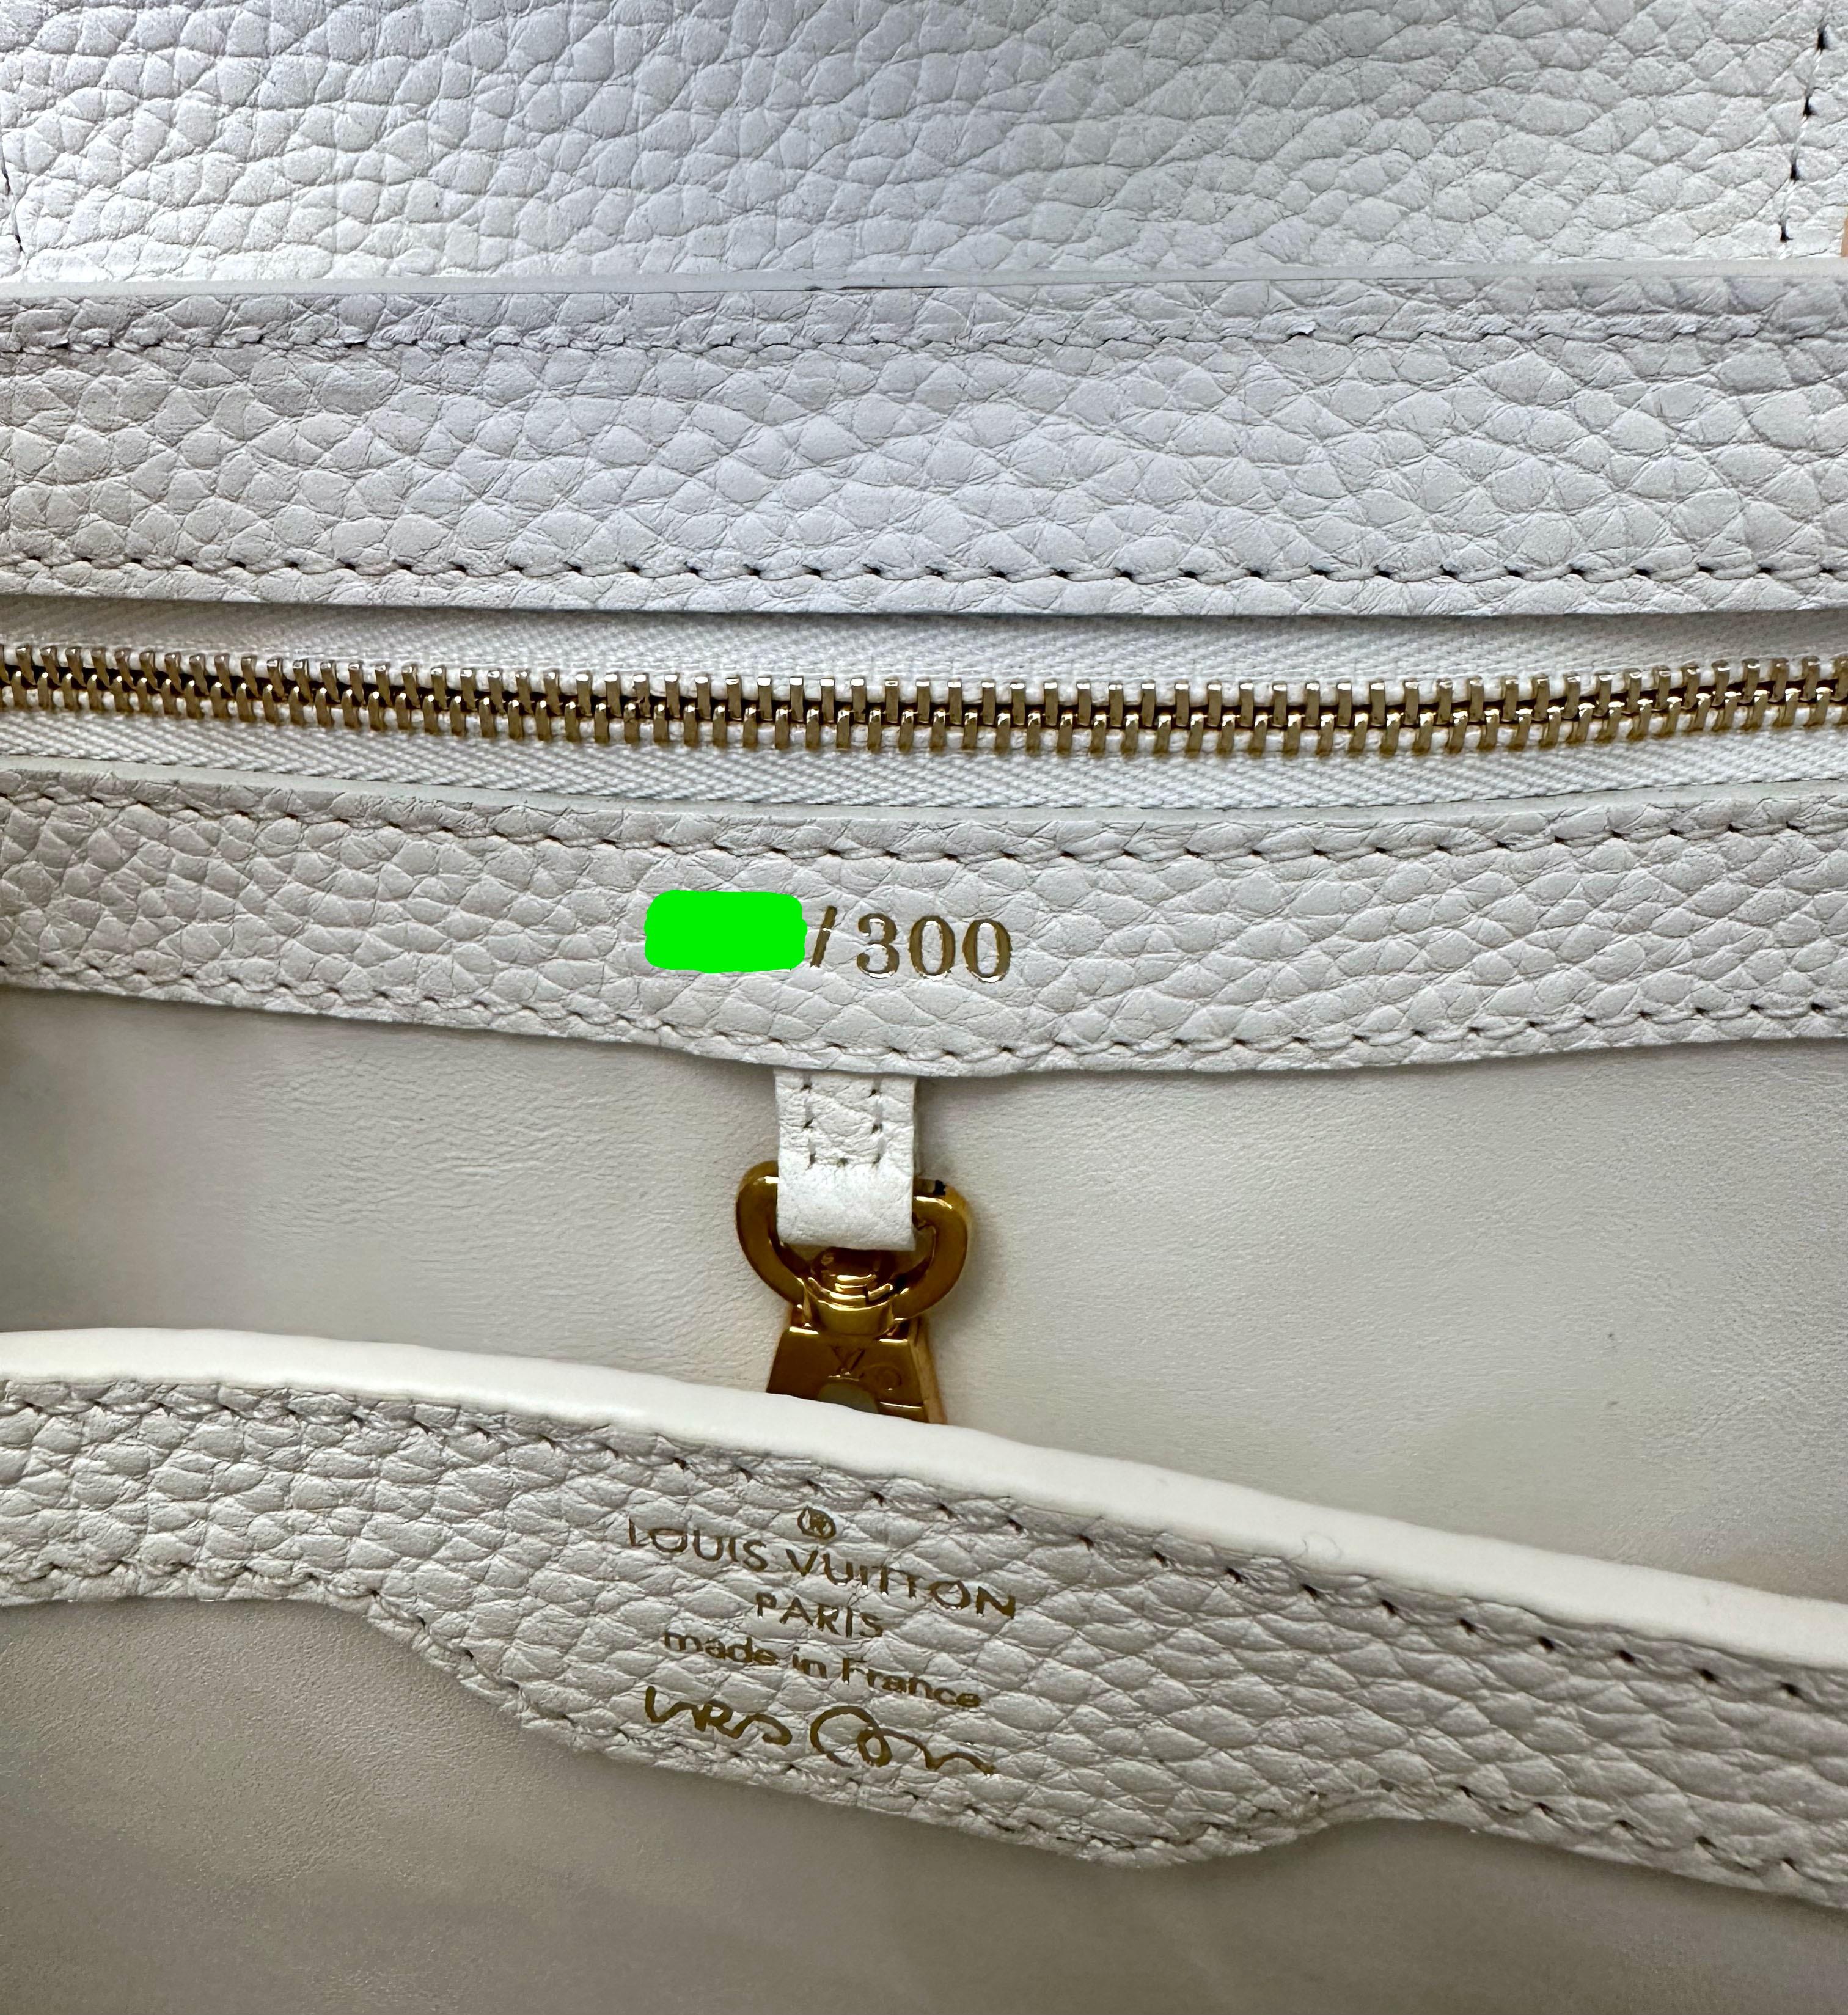 Louis Vuitton Urs Fischer Limited Edition Artycapucines BB Tasche in limitierter Auflage  für Damen oder Herren im Angebot